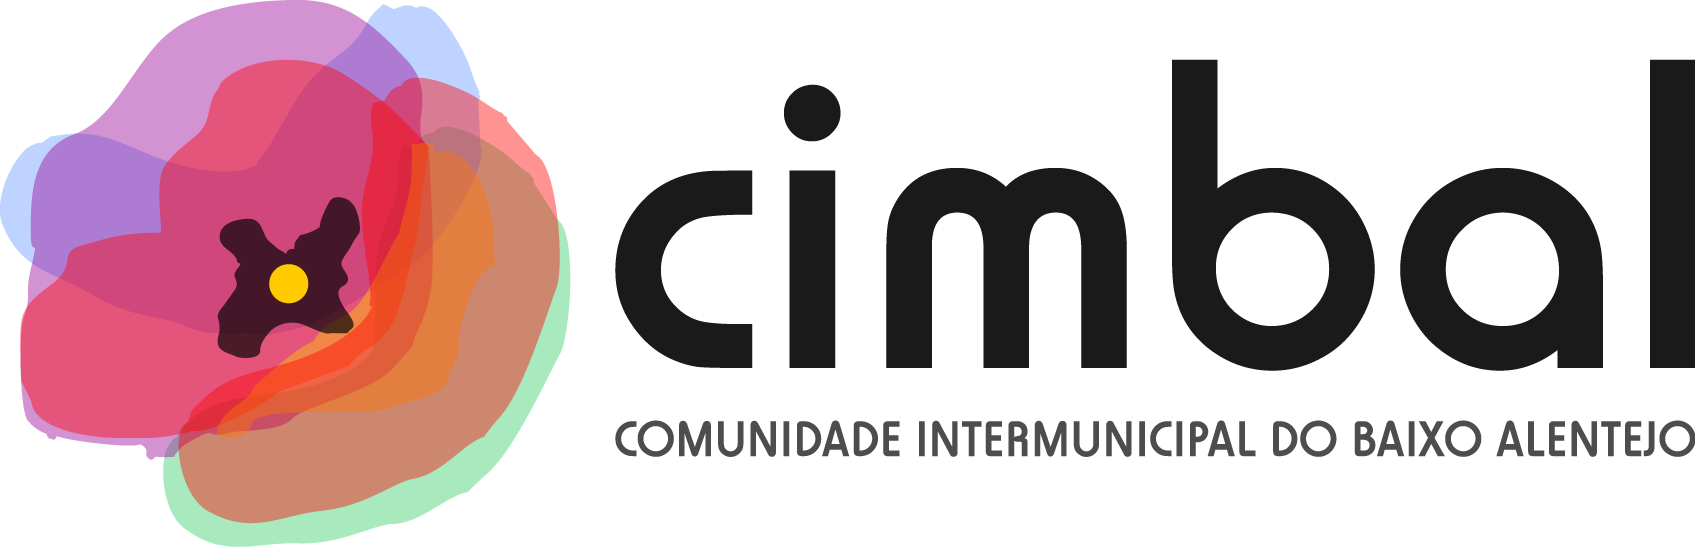 Logotipo-Comunidade Intermunicipal do Baixo Alentejo